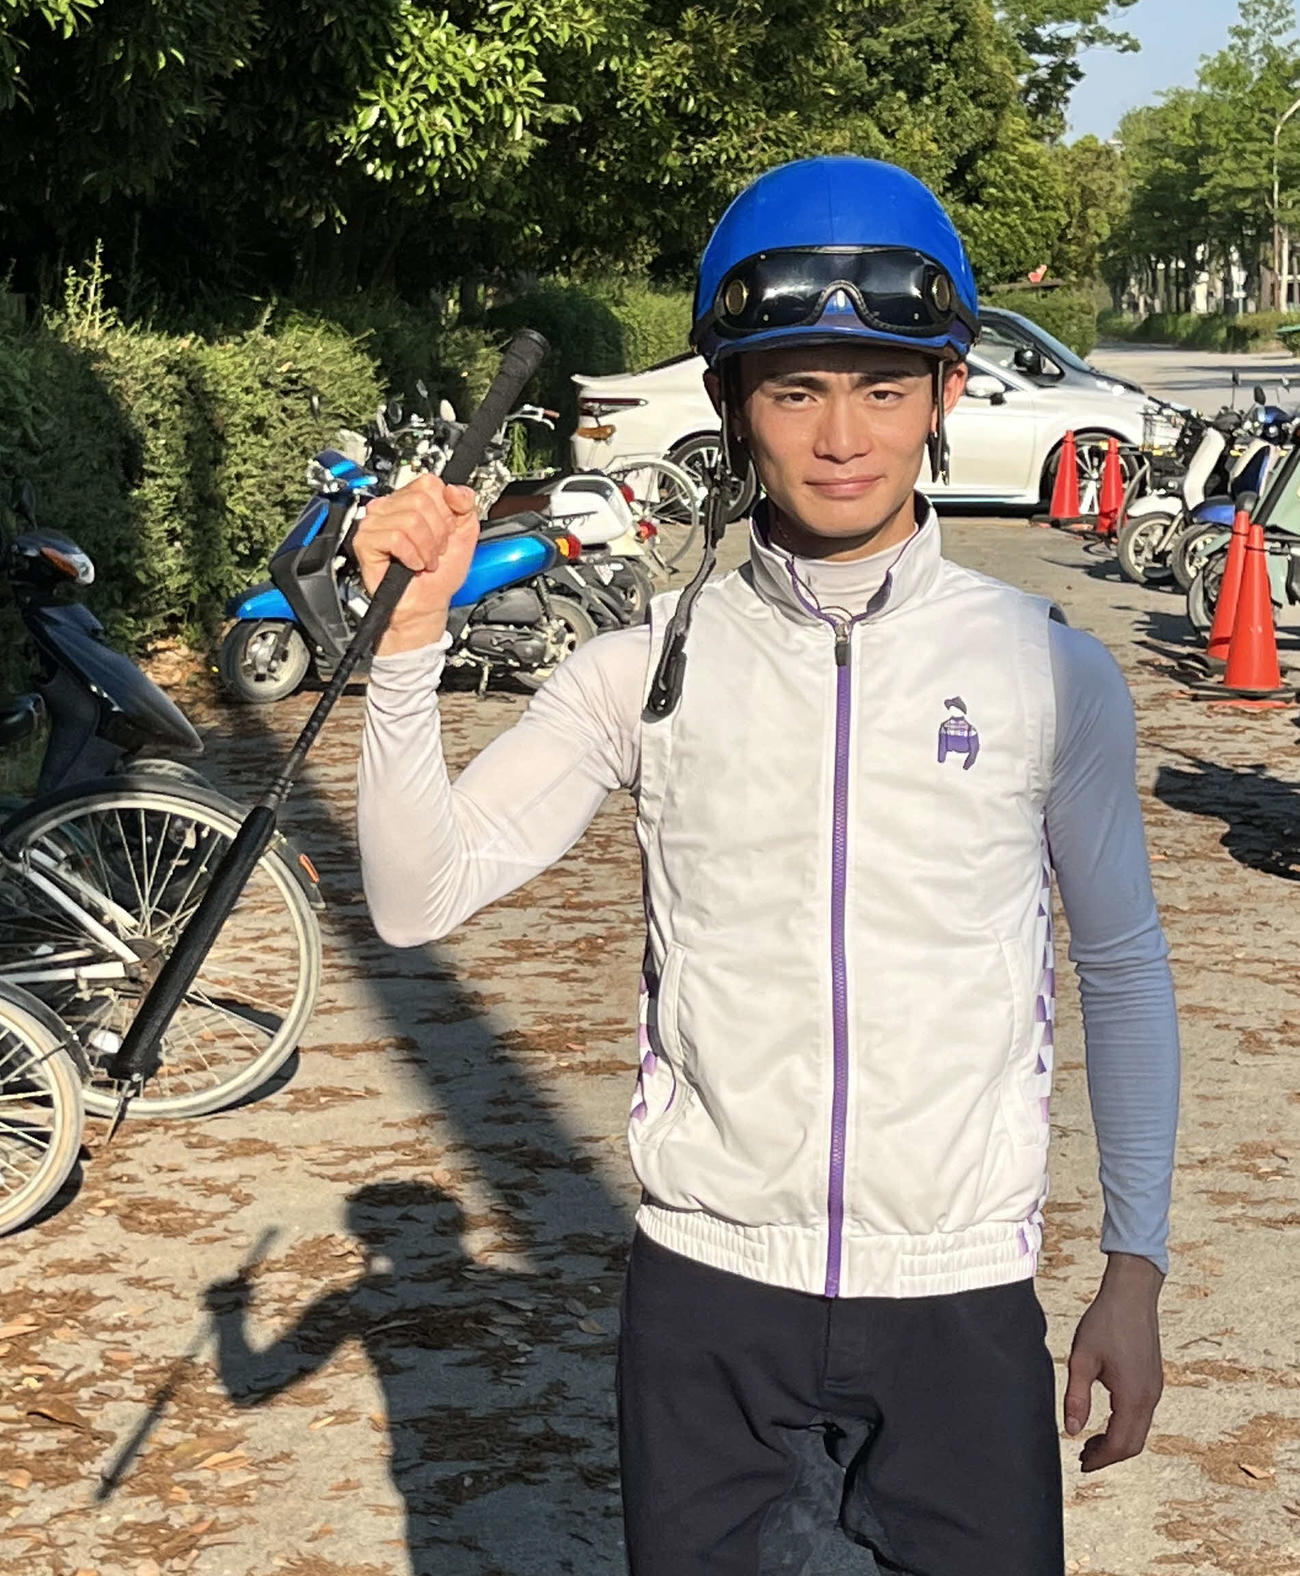 ラジオNIKKEI賞でホウオウノーサイドに騎乗予定の永野騎手は2年目で重賞初制覇を狙う